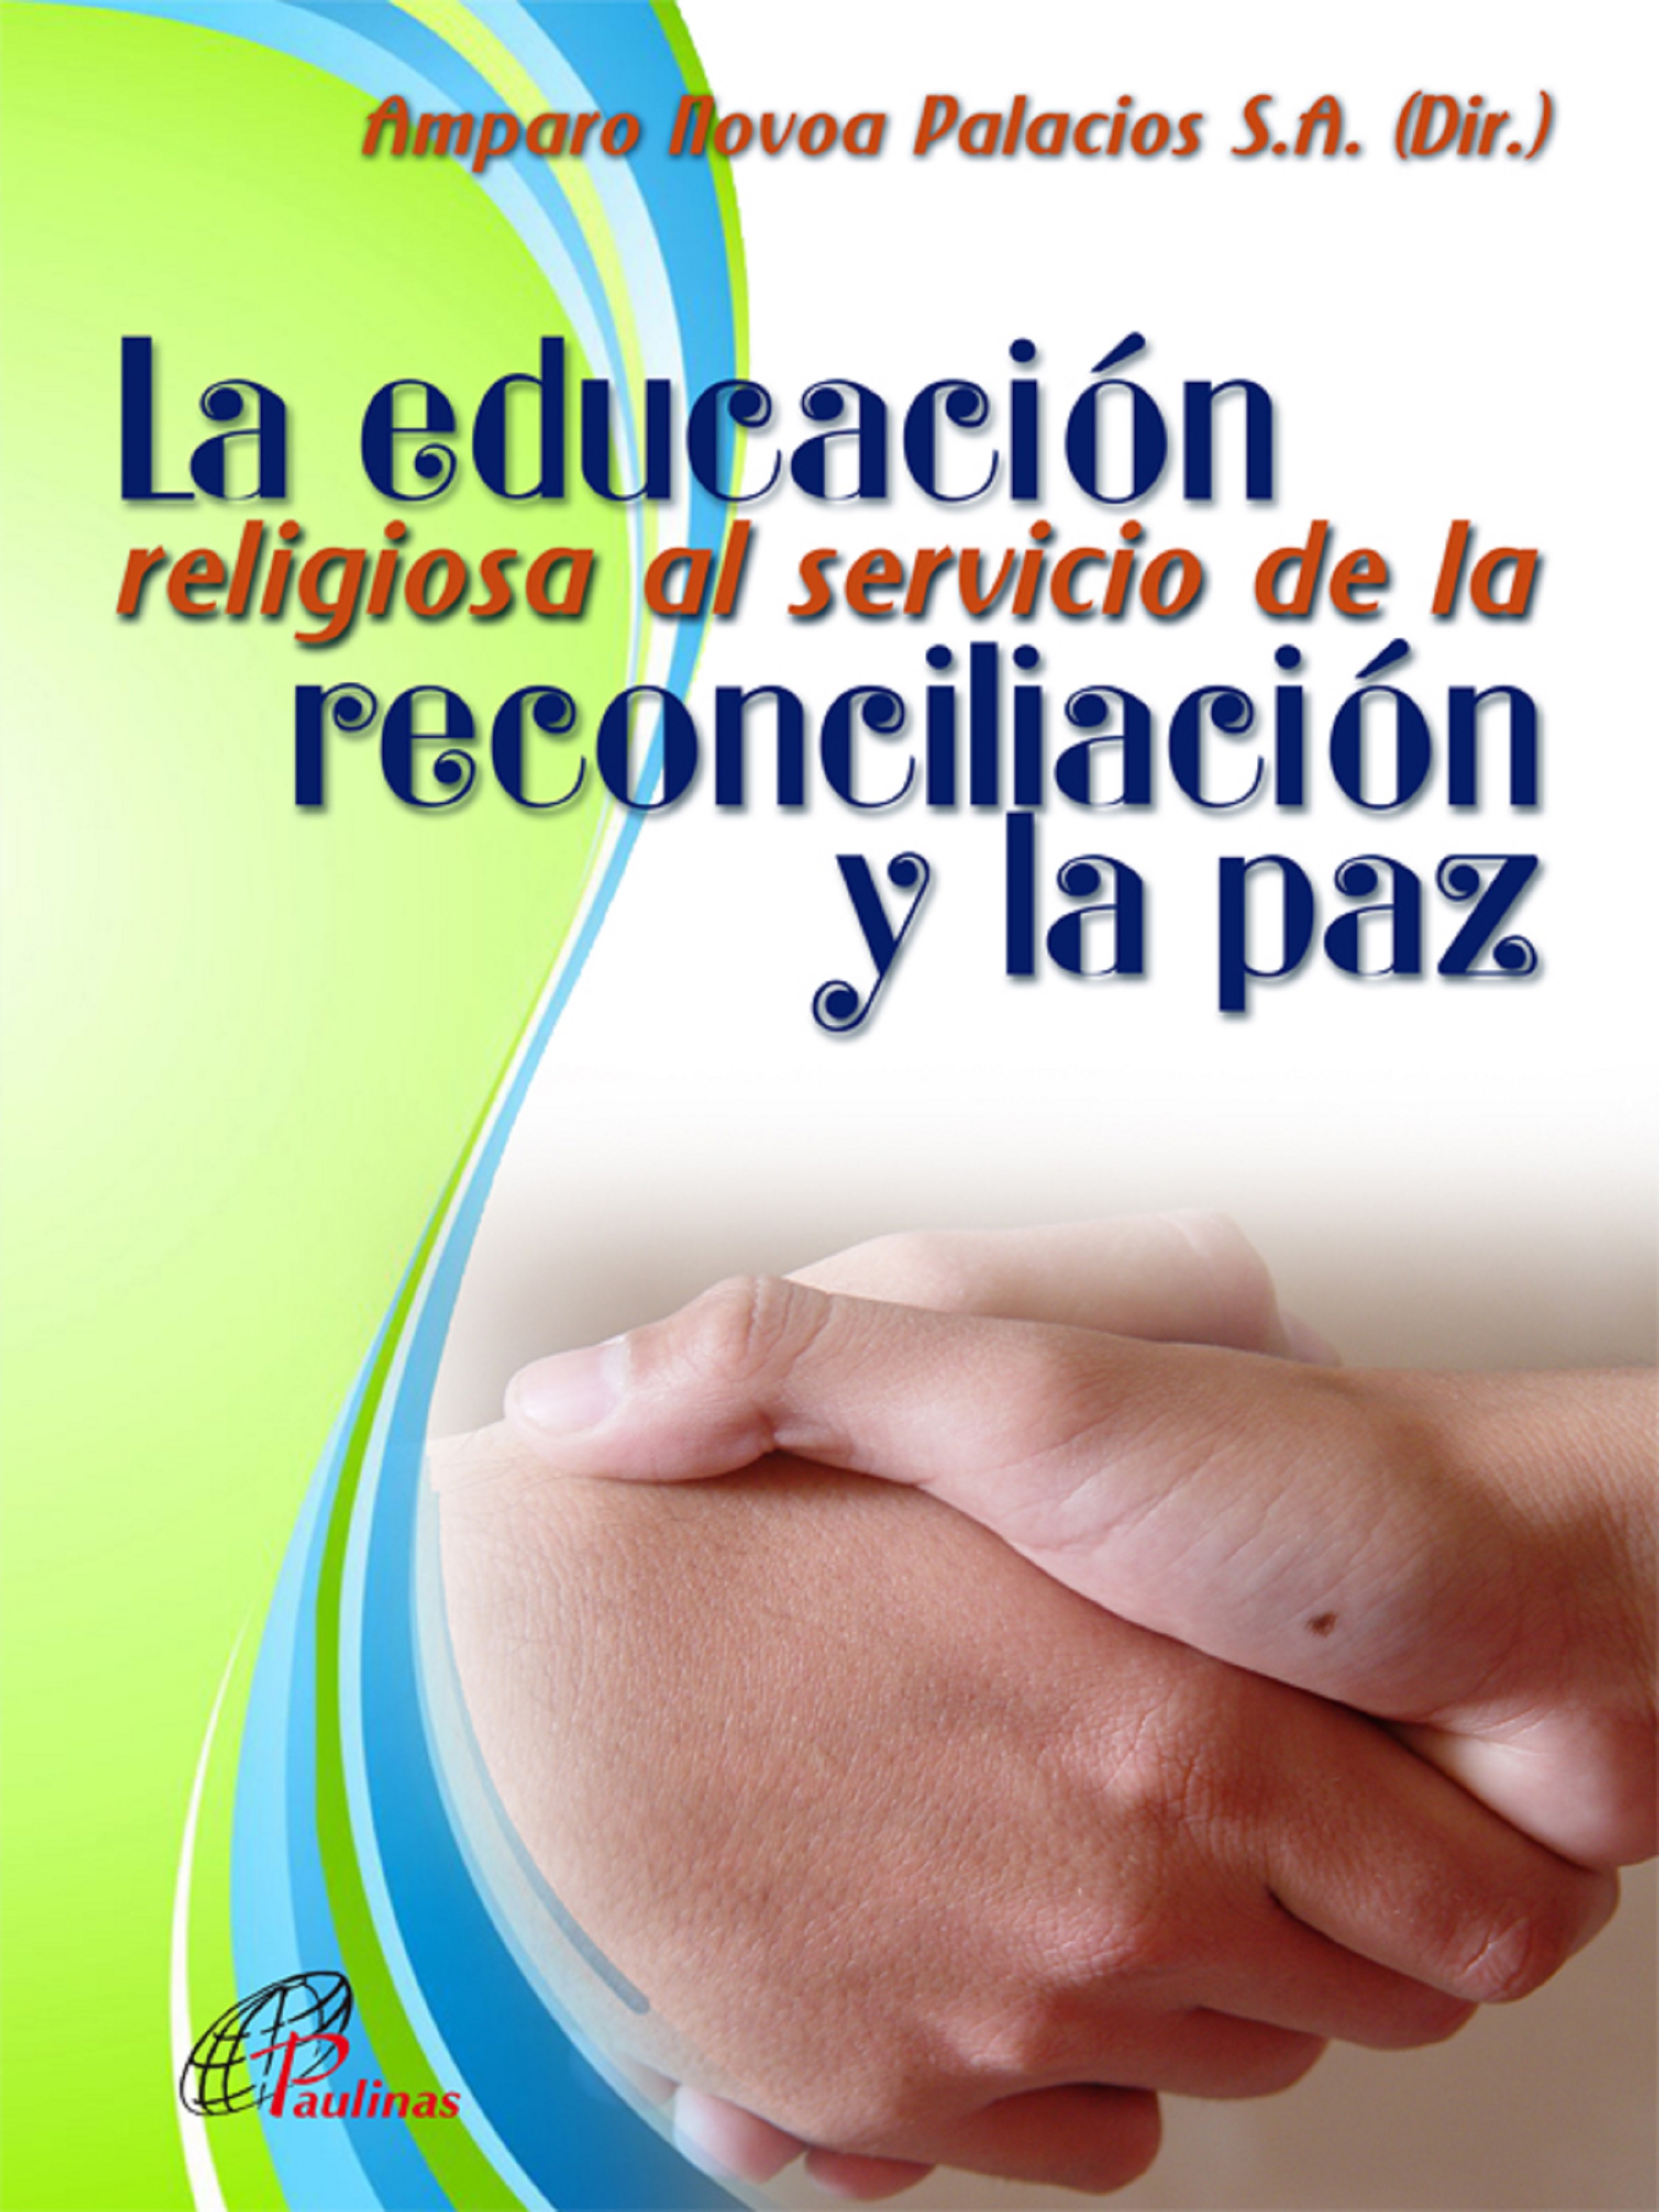 Amparo Novoa Palacios La educación religiosa al servicio de la reconciliación y la paz